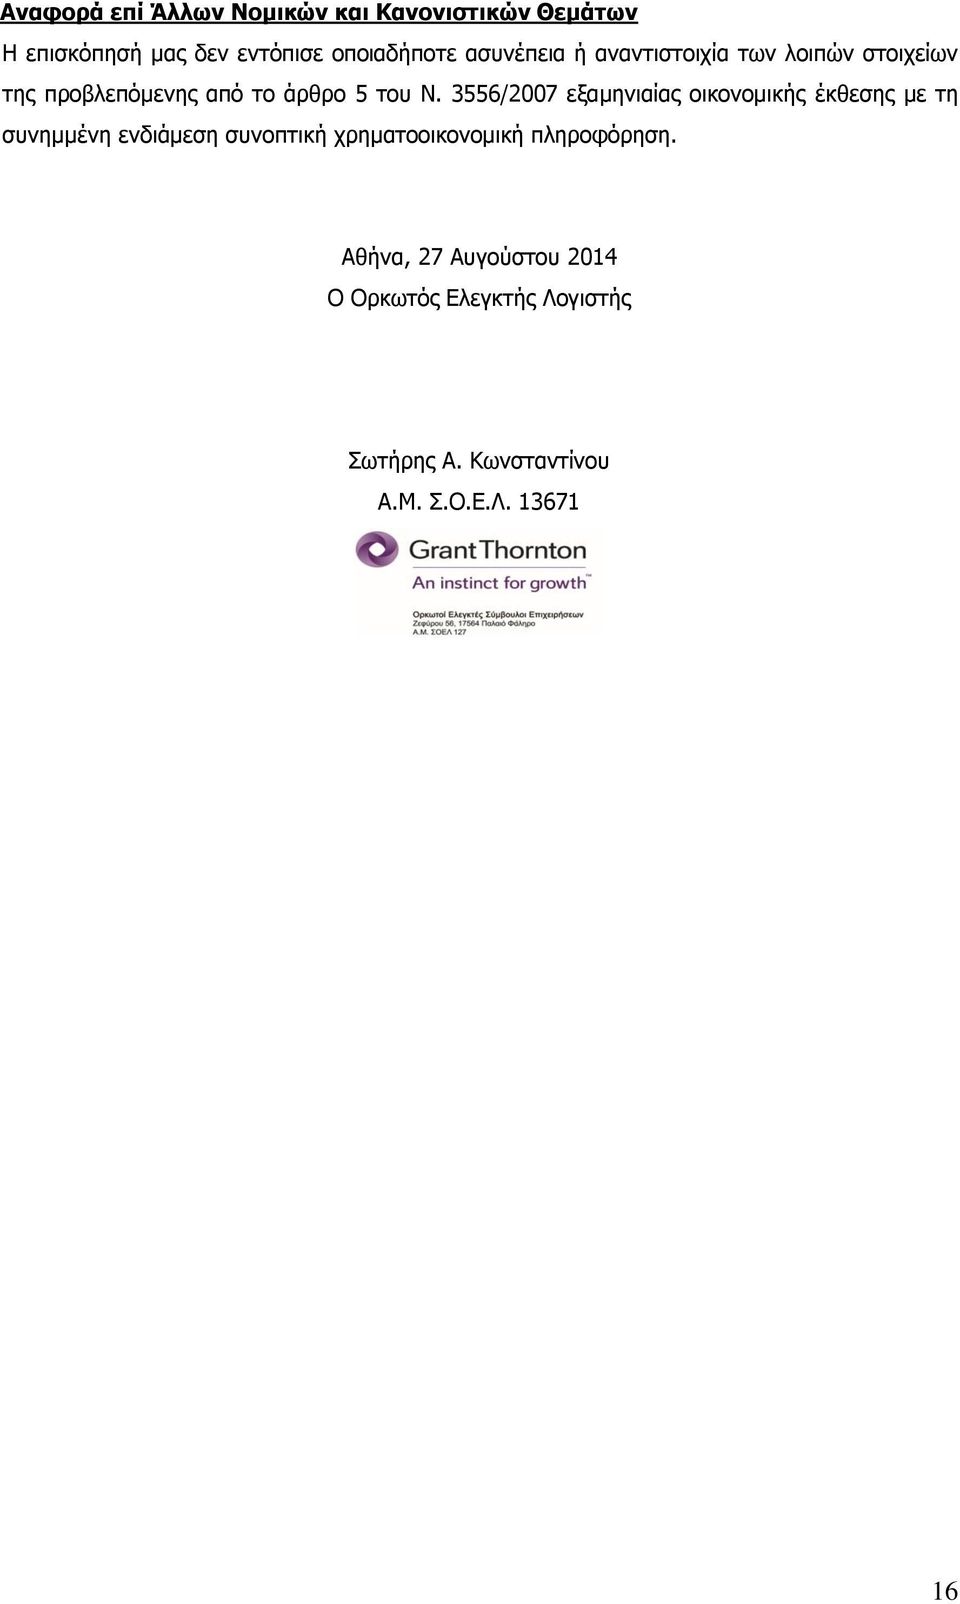 3556/2007 εξαμηνιαίας οικονομικής έκθεσης με τη συνημμένη ενδιάμεση συνοπτική χρηματοοικονομική